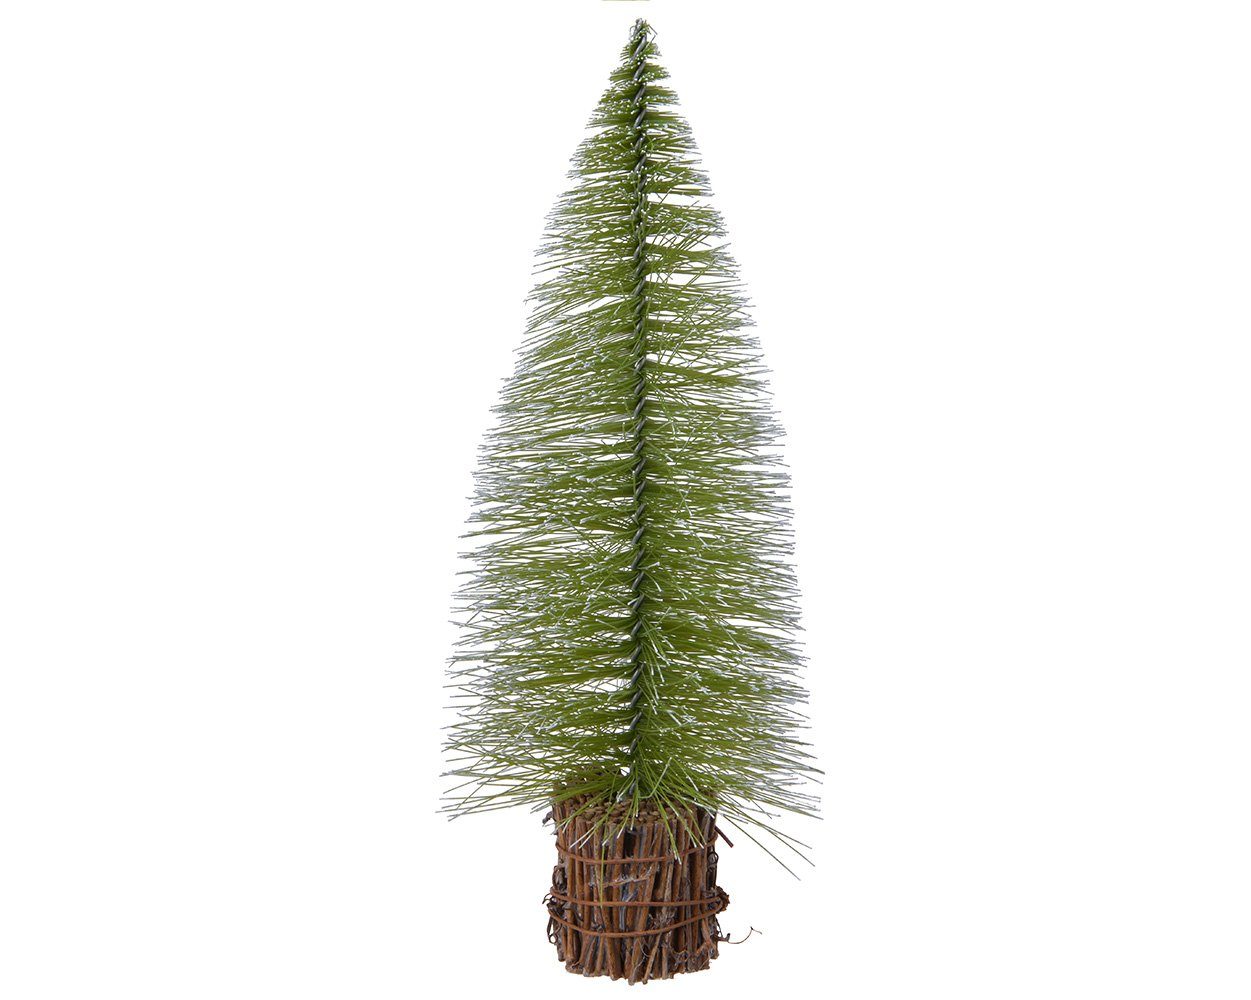 Decoris season decorations Künstlicher Weihnachtsbaum, Tannenbaum Miniatur künstlich mit Holzfuss 20cm grün